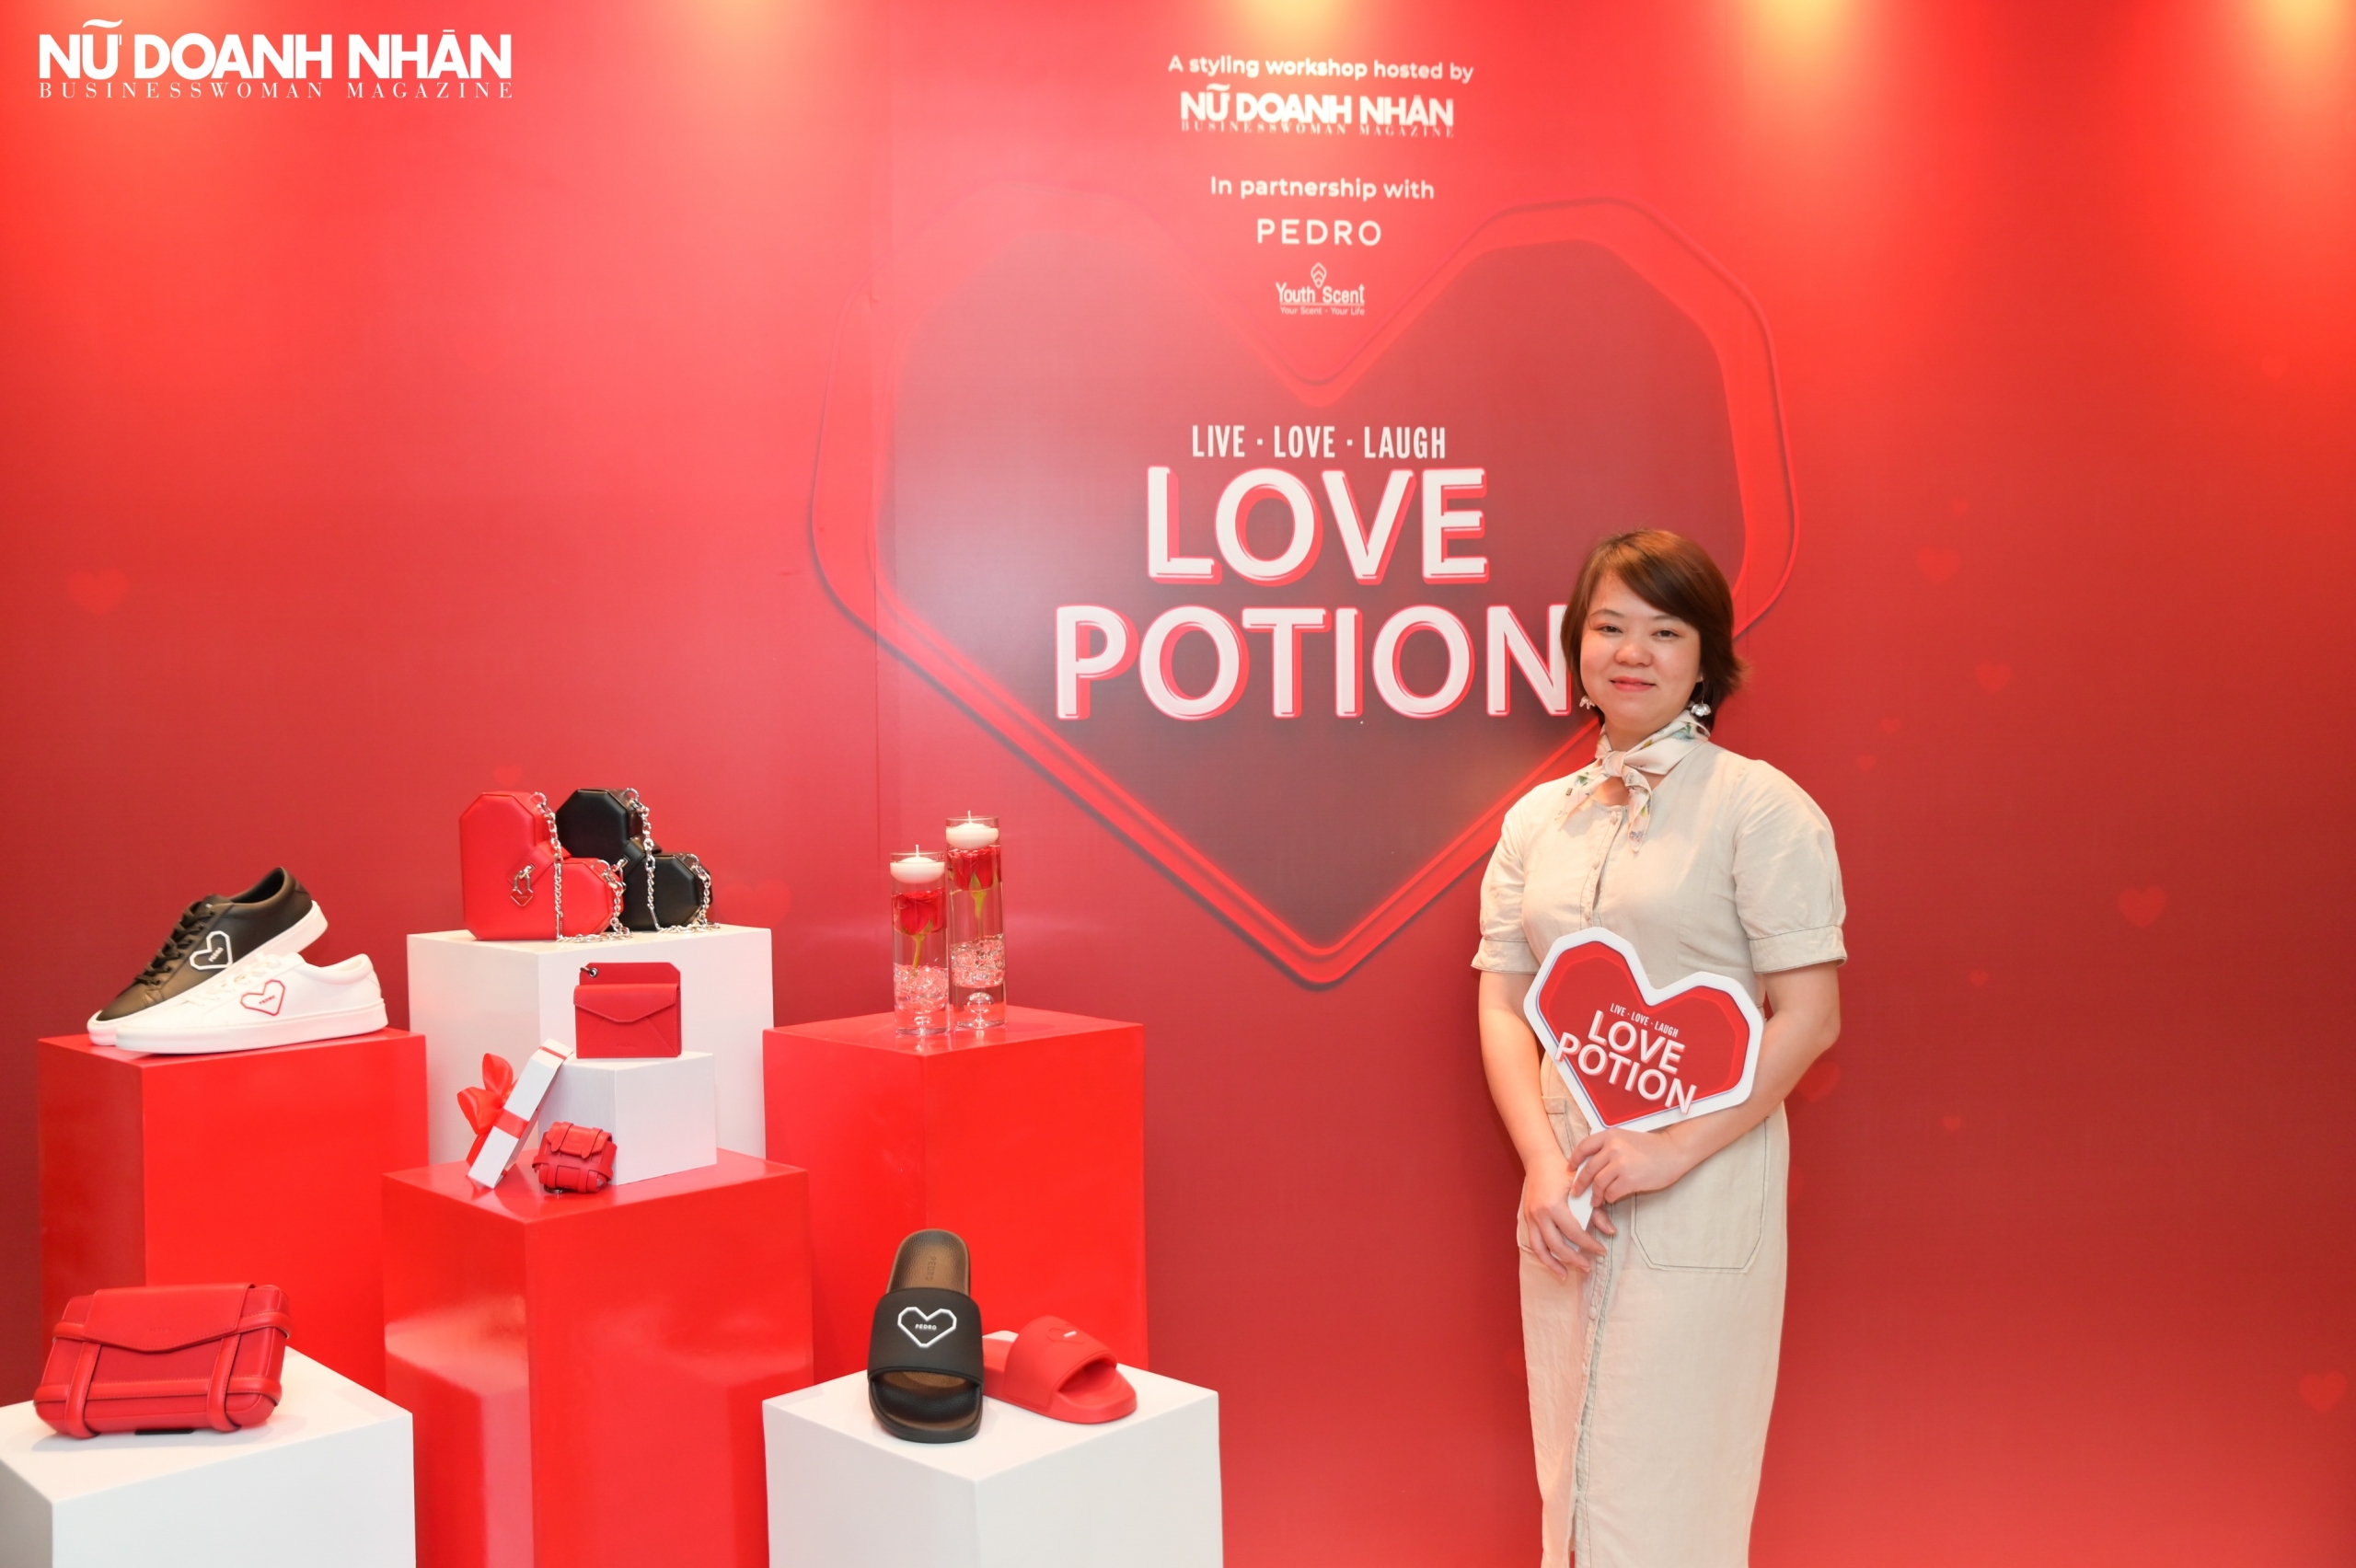 Trao tặng yêu thương mùa Valentine cùng workshop Love Potion